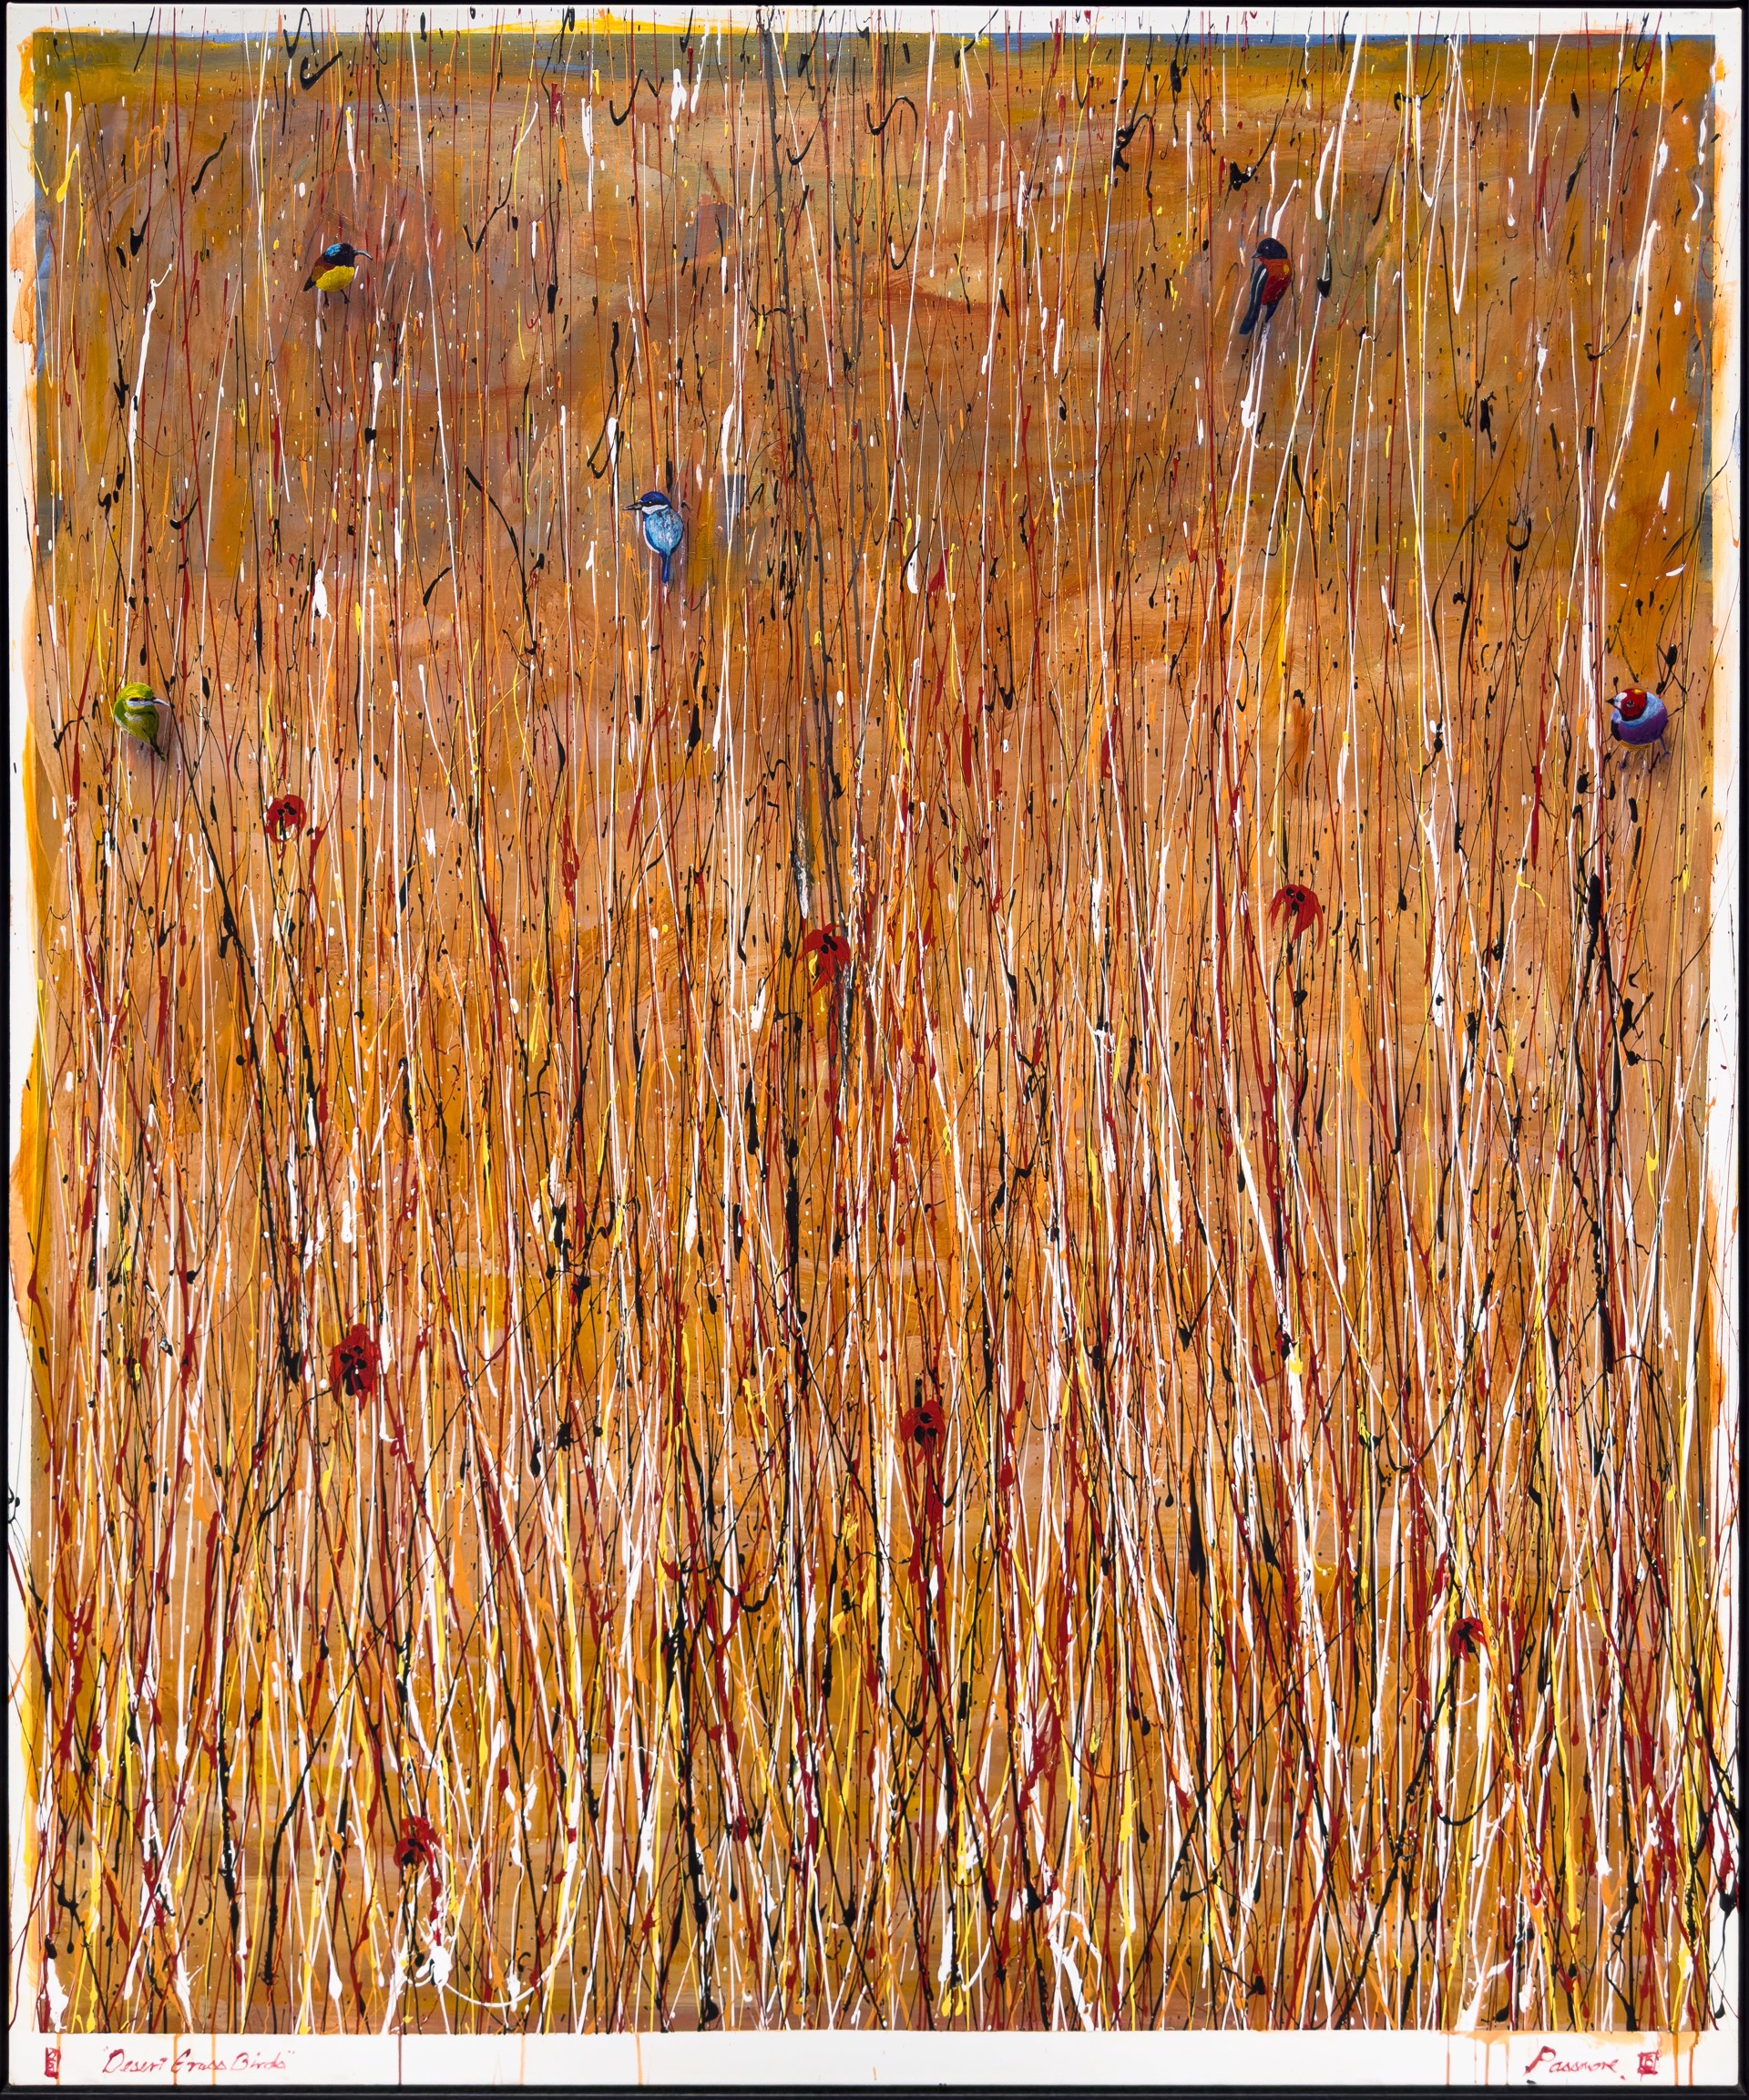 Desert Grass Birds by Colin Passmore